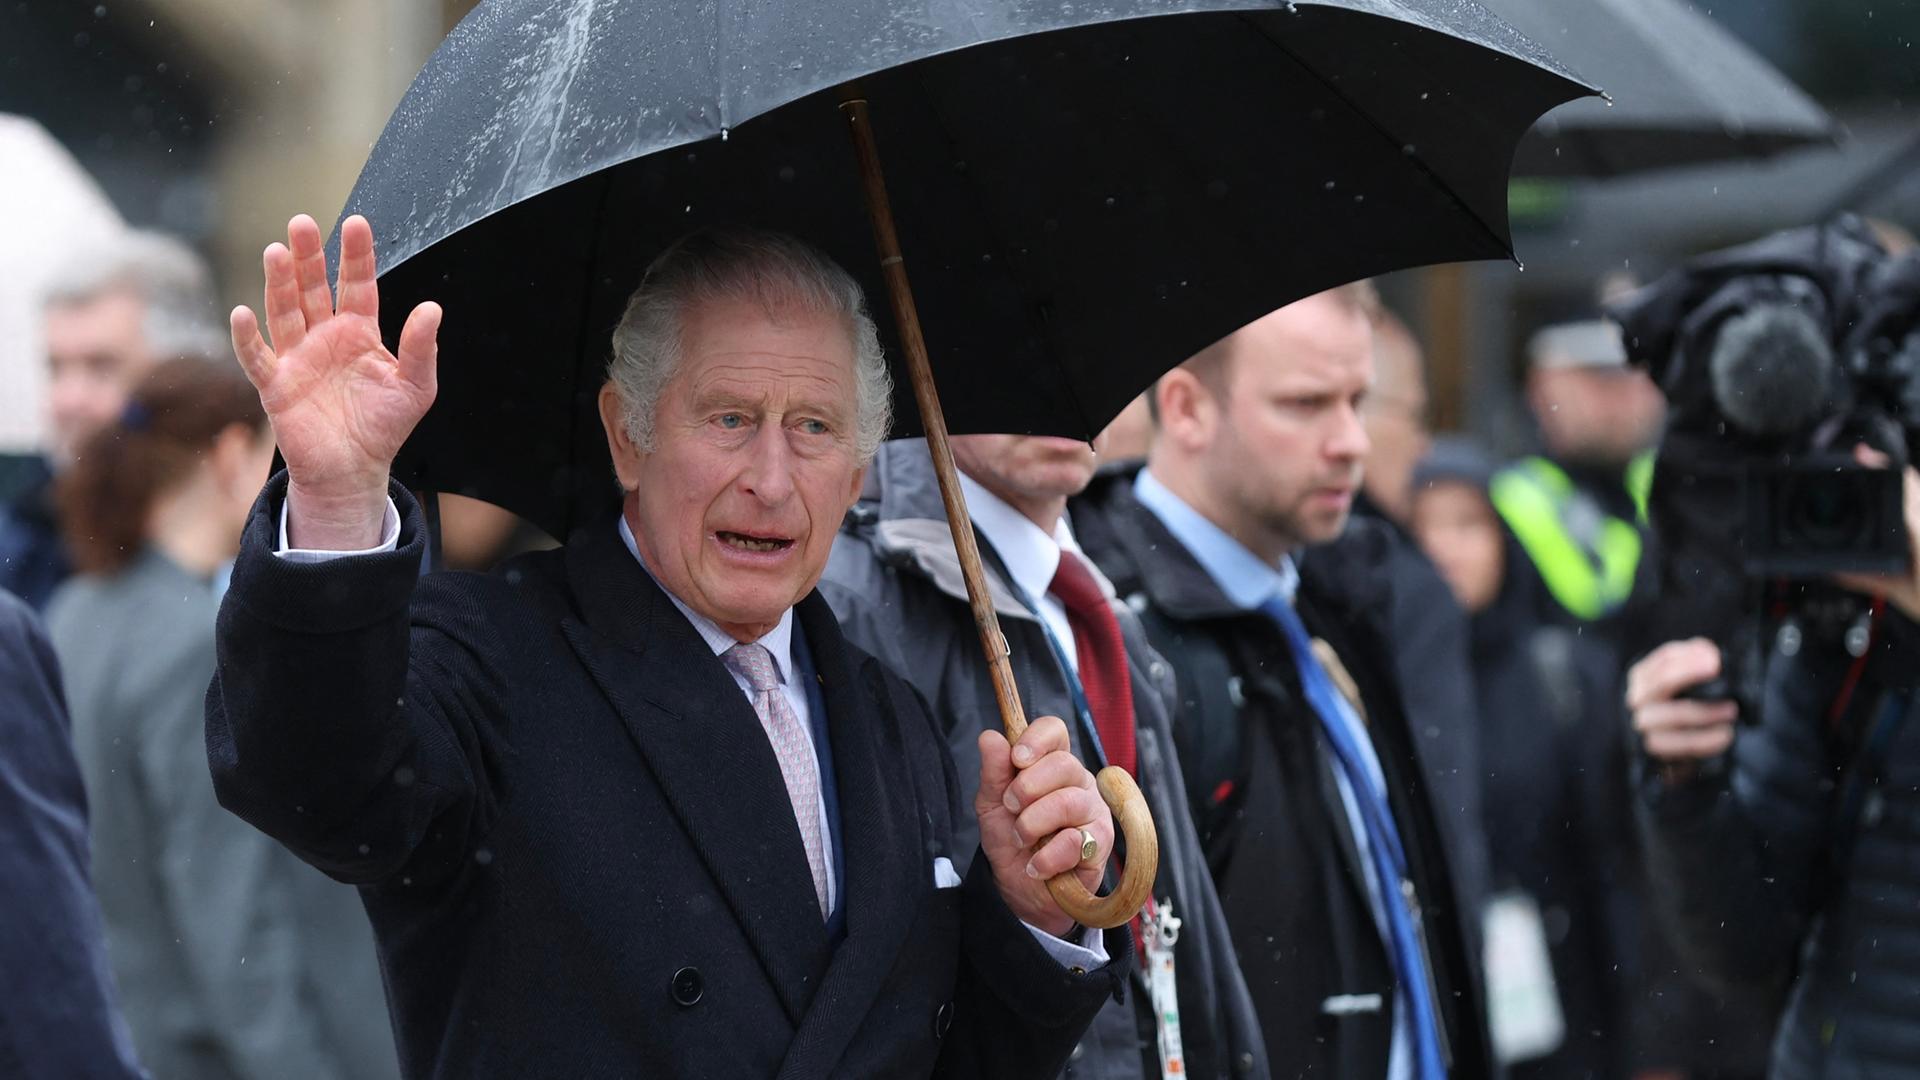 König Charles III. trägt einen Regenschirm und winkt den Menschen zu.